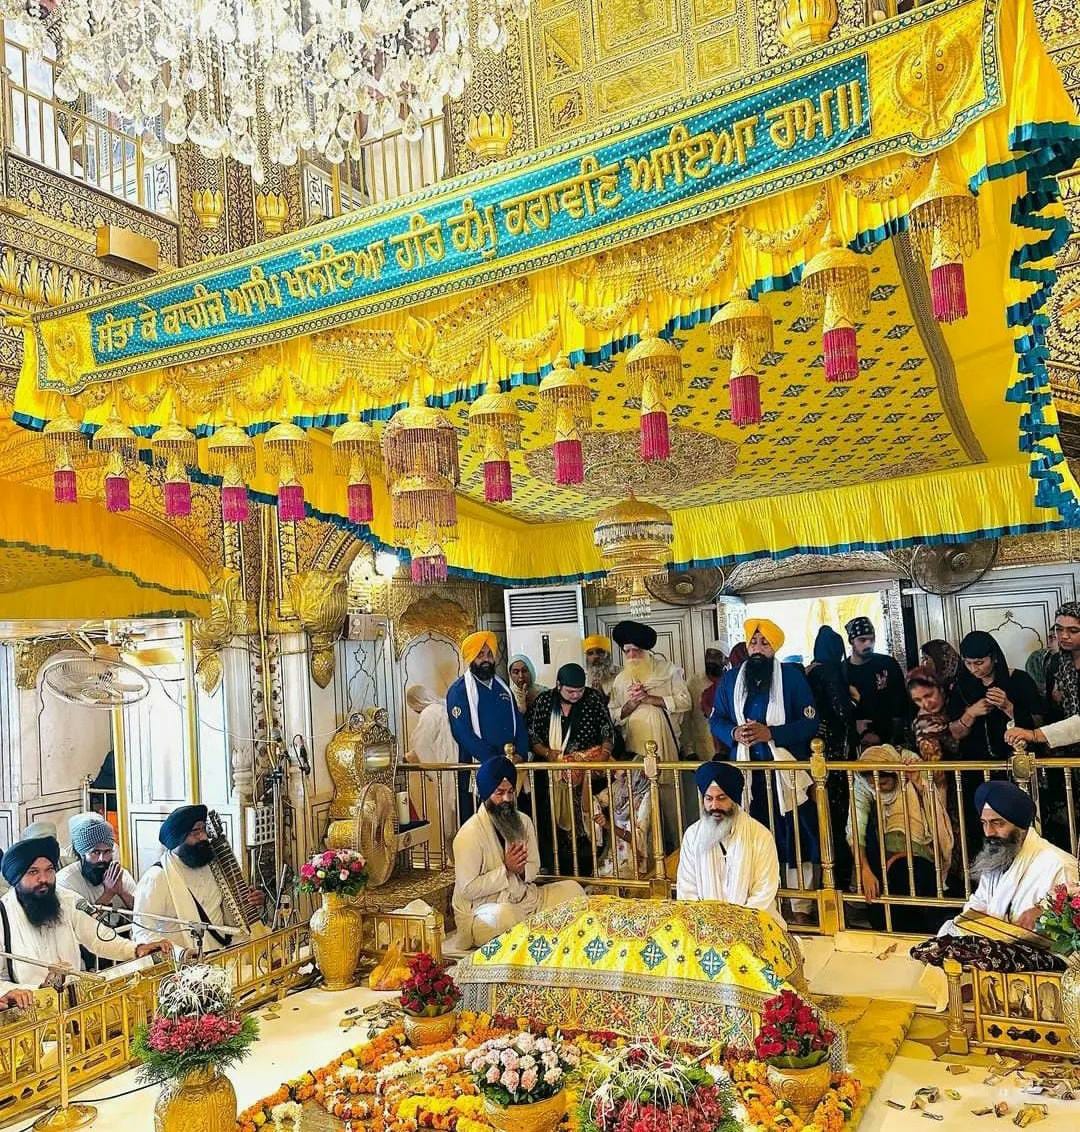 #WaheguruJi 🙏🏻 Khalsa Waheguru Ji 🙏🏻 Di Fateh 😇🌸❤. #Wmk #SatnaamWaheguru #Sikhism #Teachings #ProudSikh #SikhsForIndia